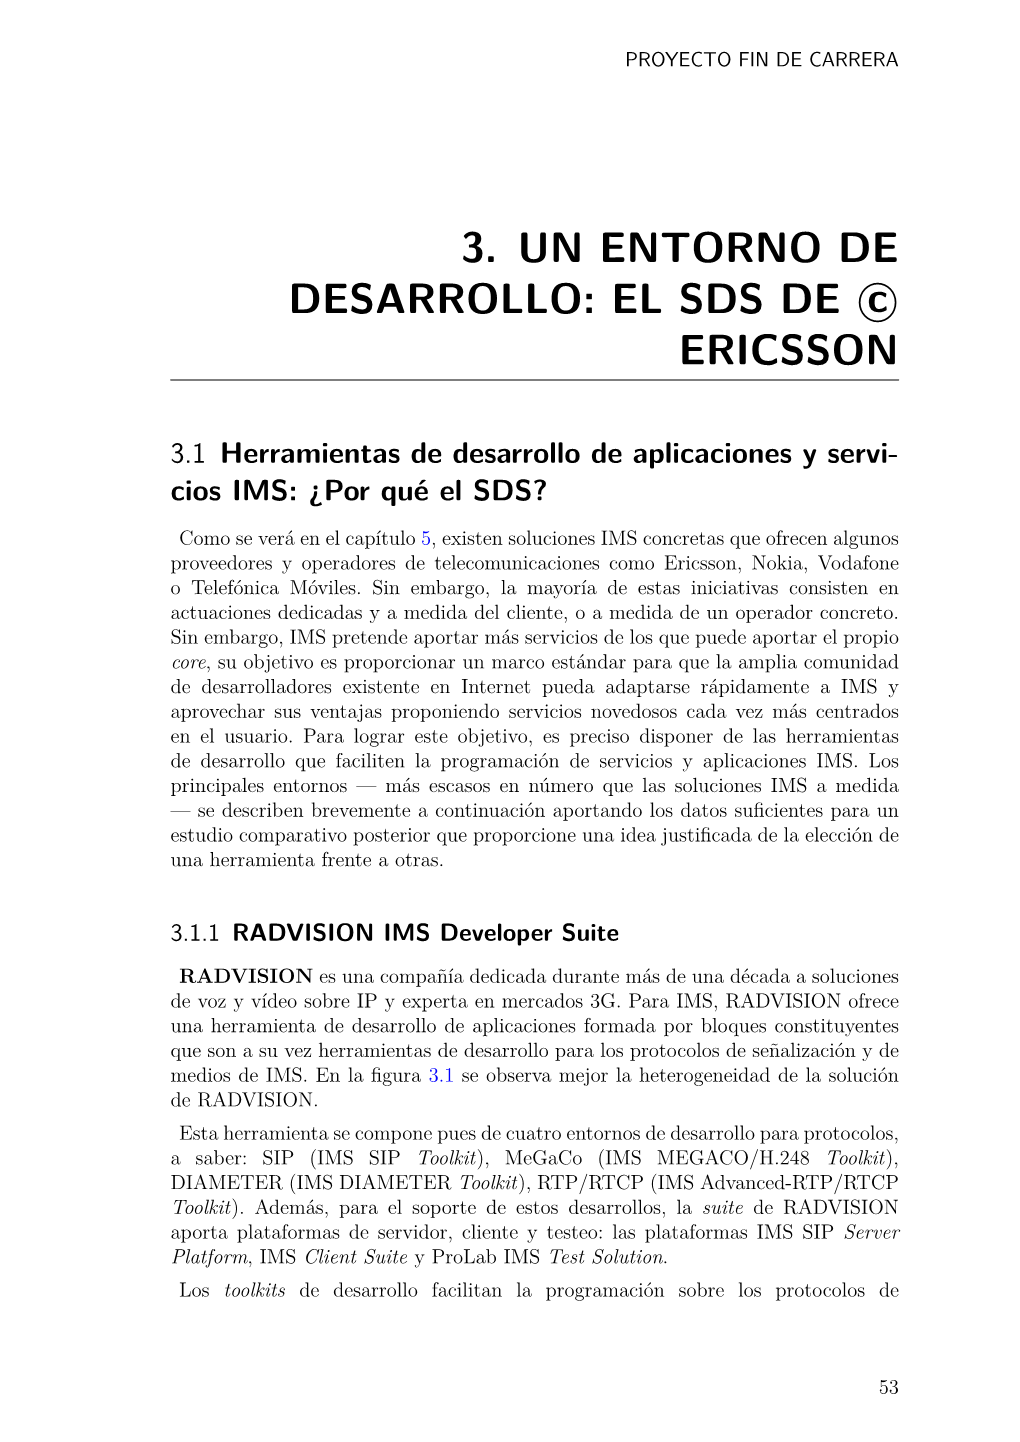 3. UN ENTORNO DE DESARROLLO: EL SDS DE Cс ERICSSON